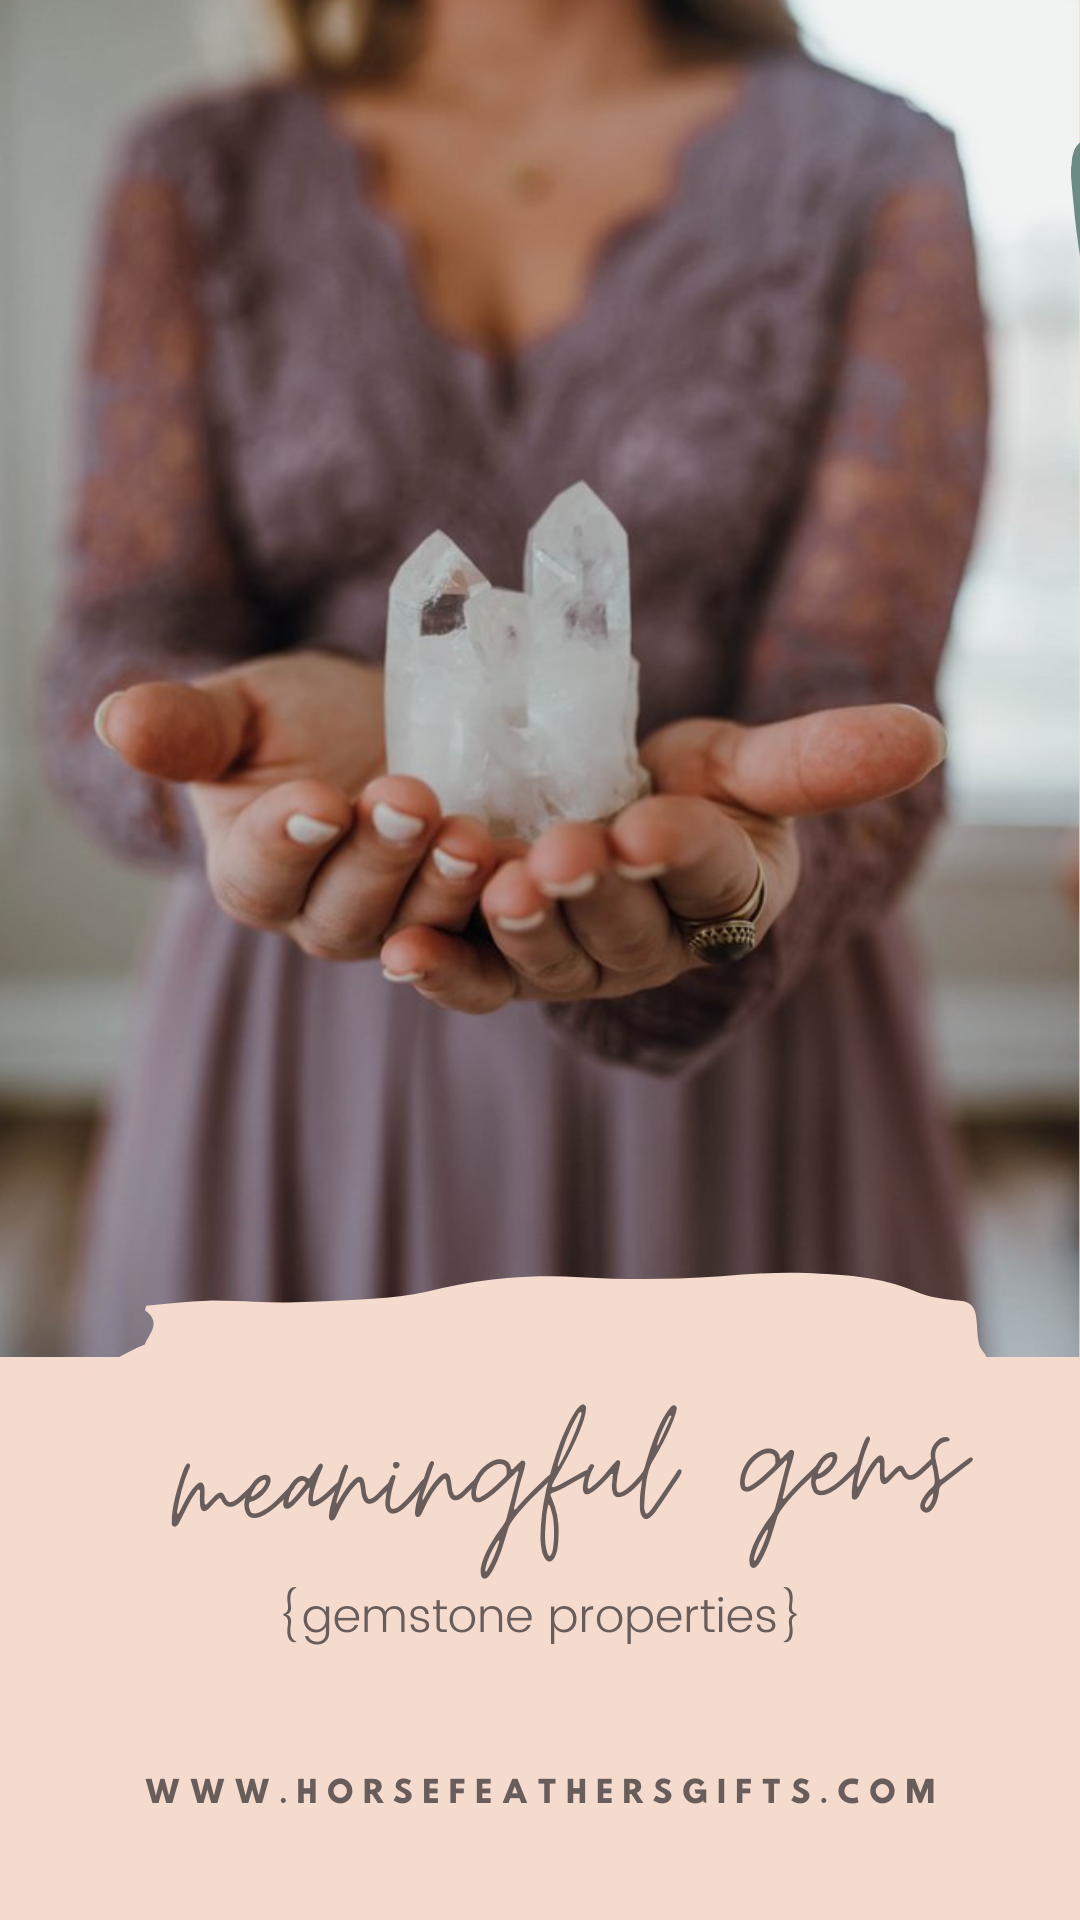 Gemstones Properties + Meanings